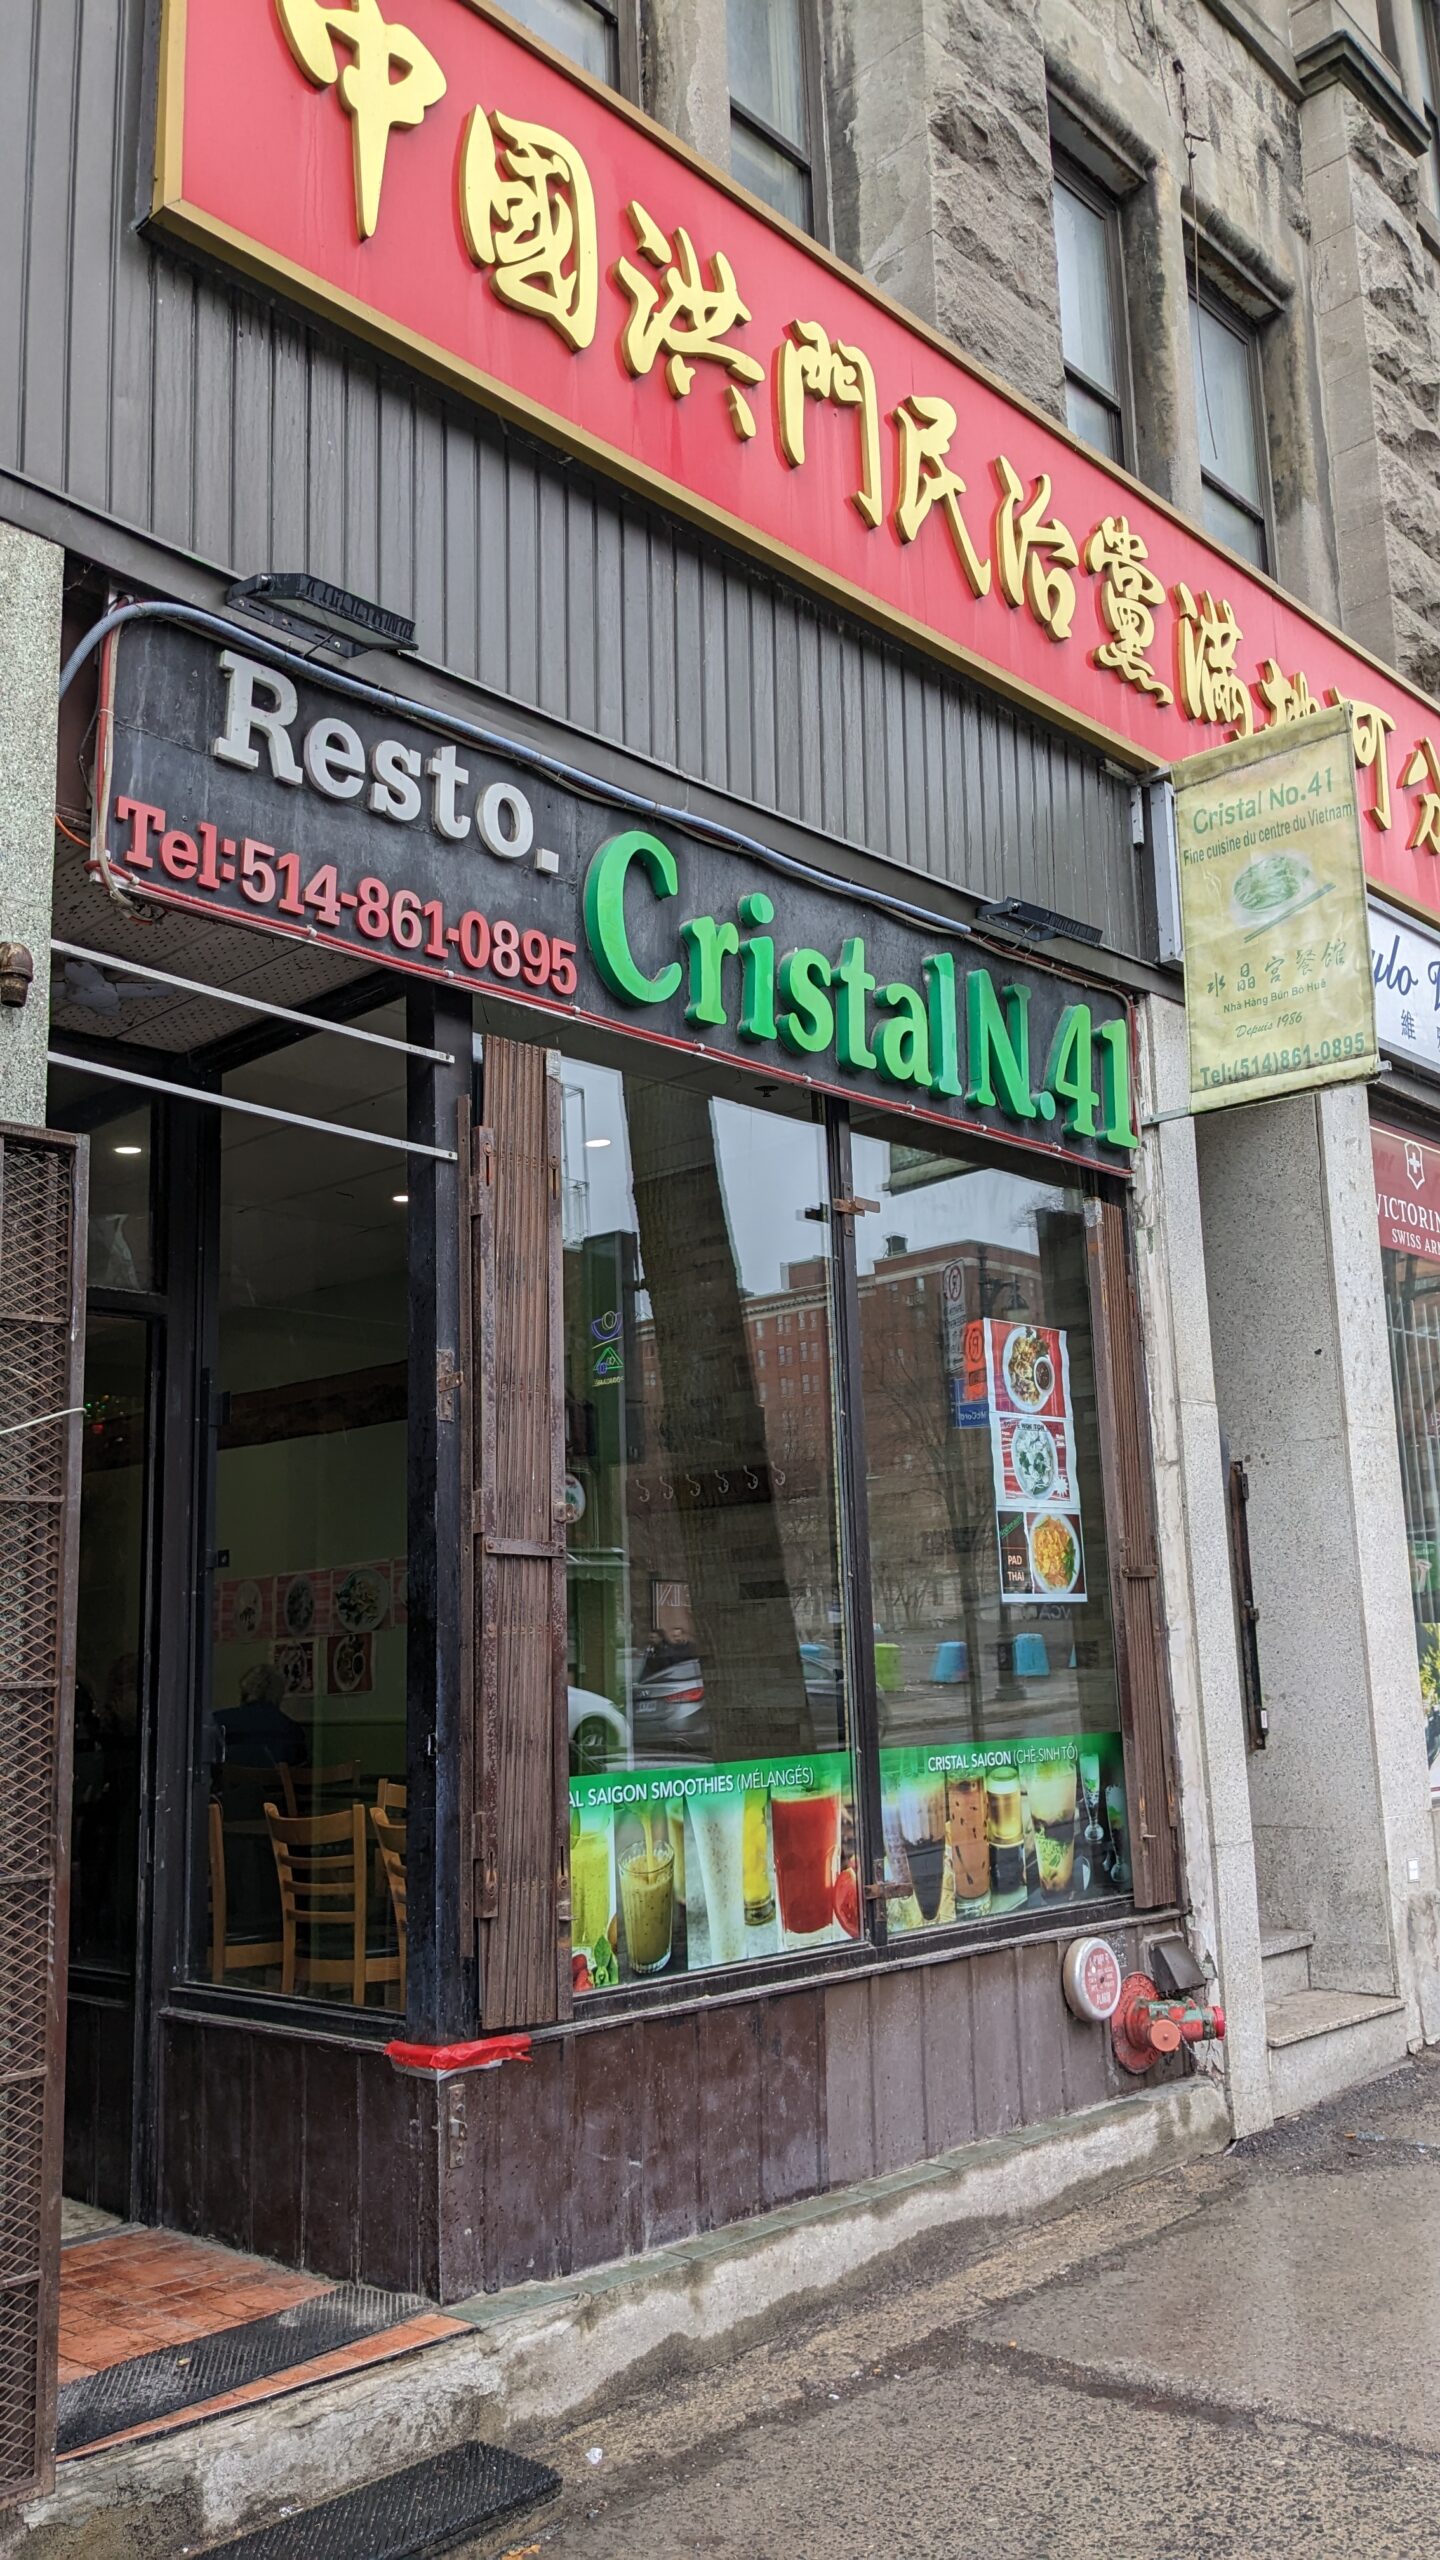 Retrouvailles au quartier chinois de Montréal - Le Resto Cristal 41 4